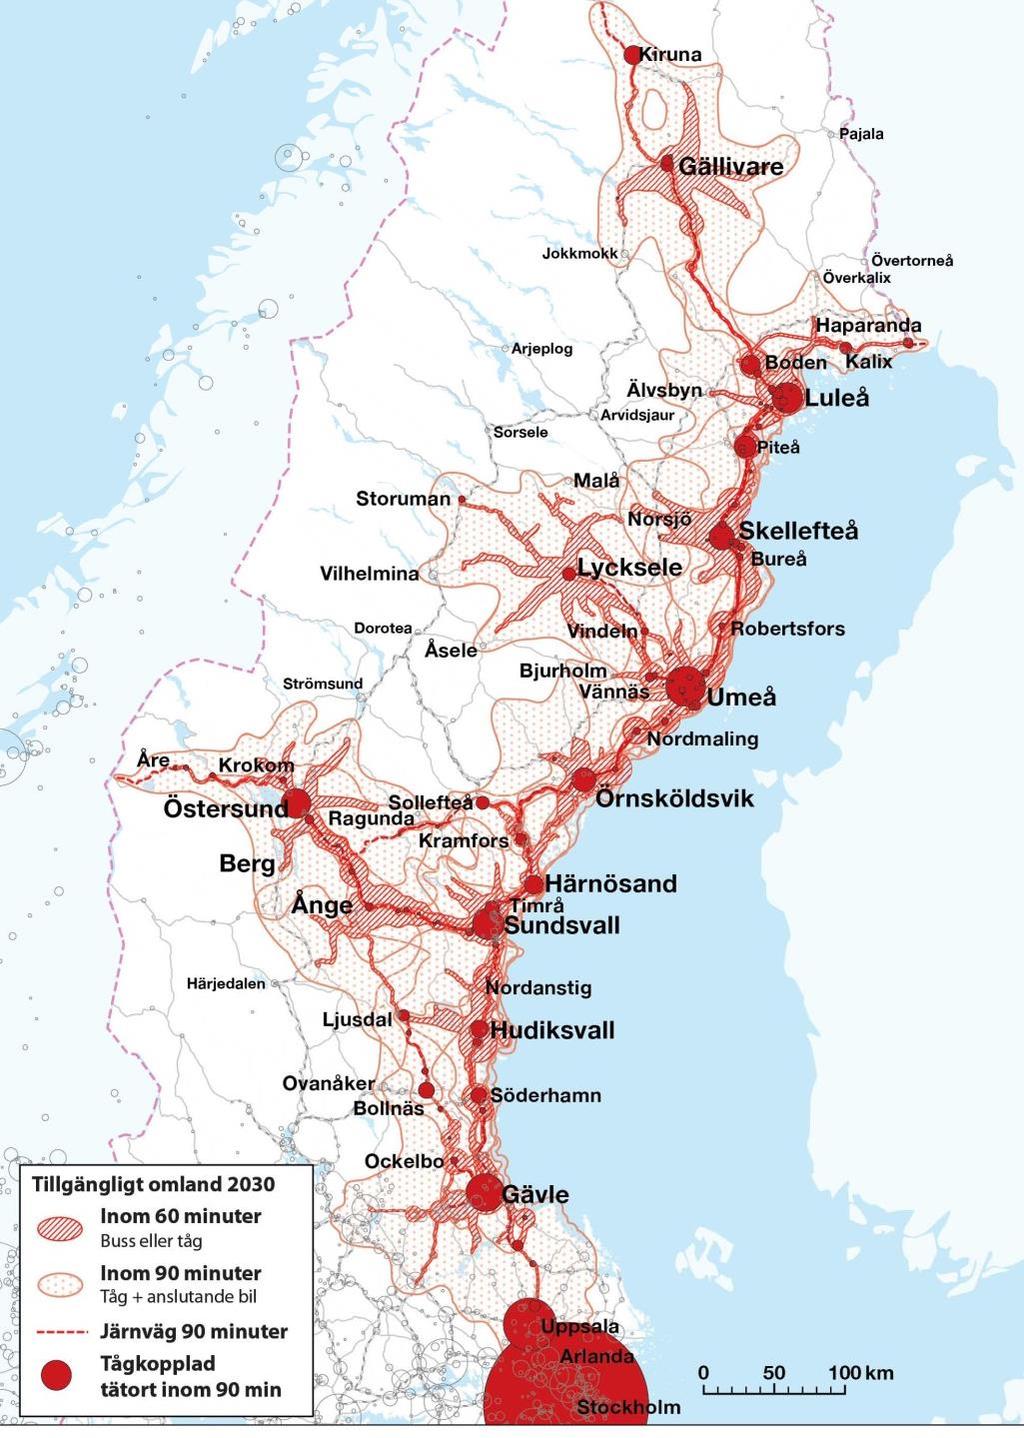 Kapacitetsstark och robust järnväg 20 Kustjärnvägen skapar effekter för resenärer i hela systemet Med en Norrbotniabanan mellan Umeå och Luleå, och en utvecklad persontrafik längs tvärstråken, stärks